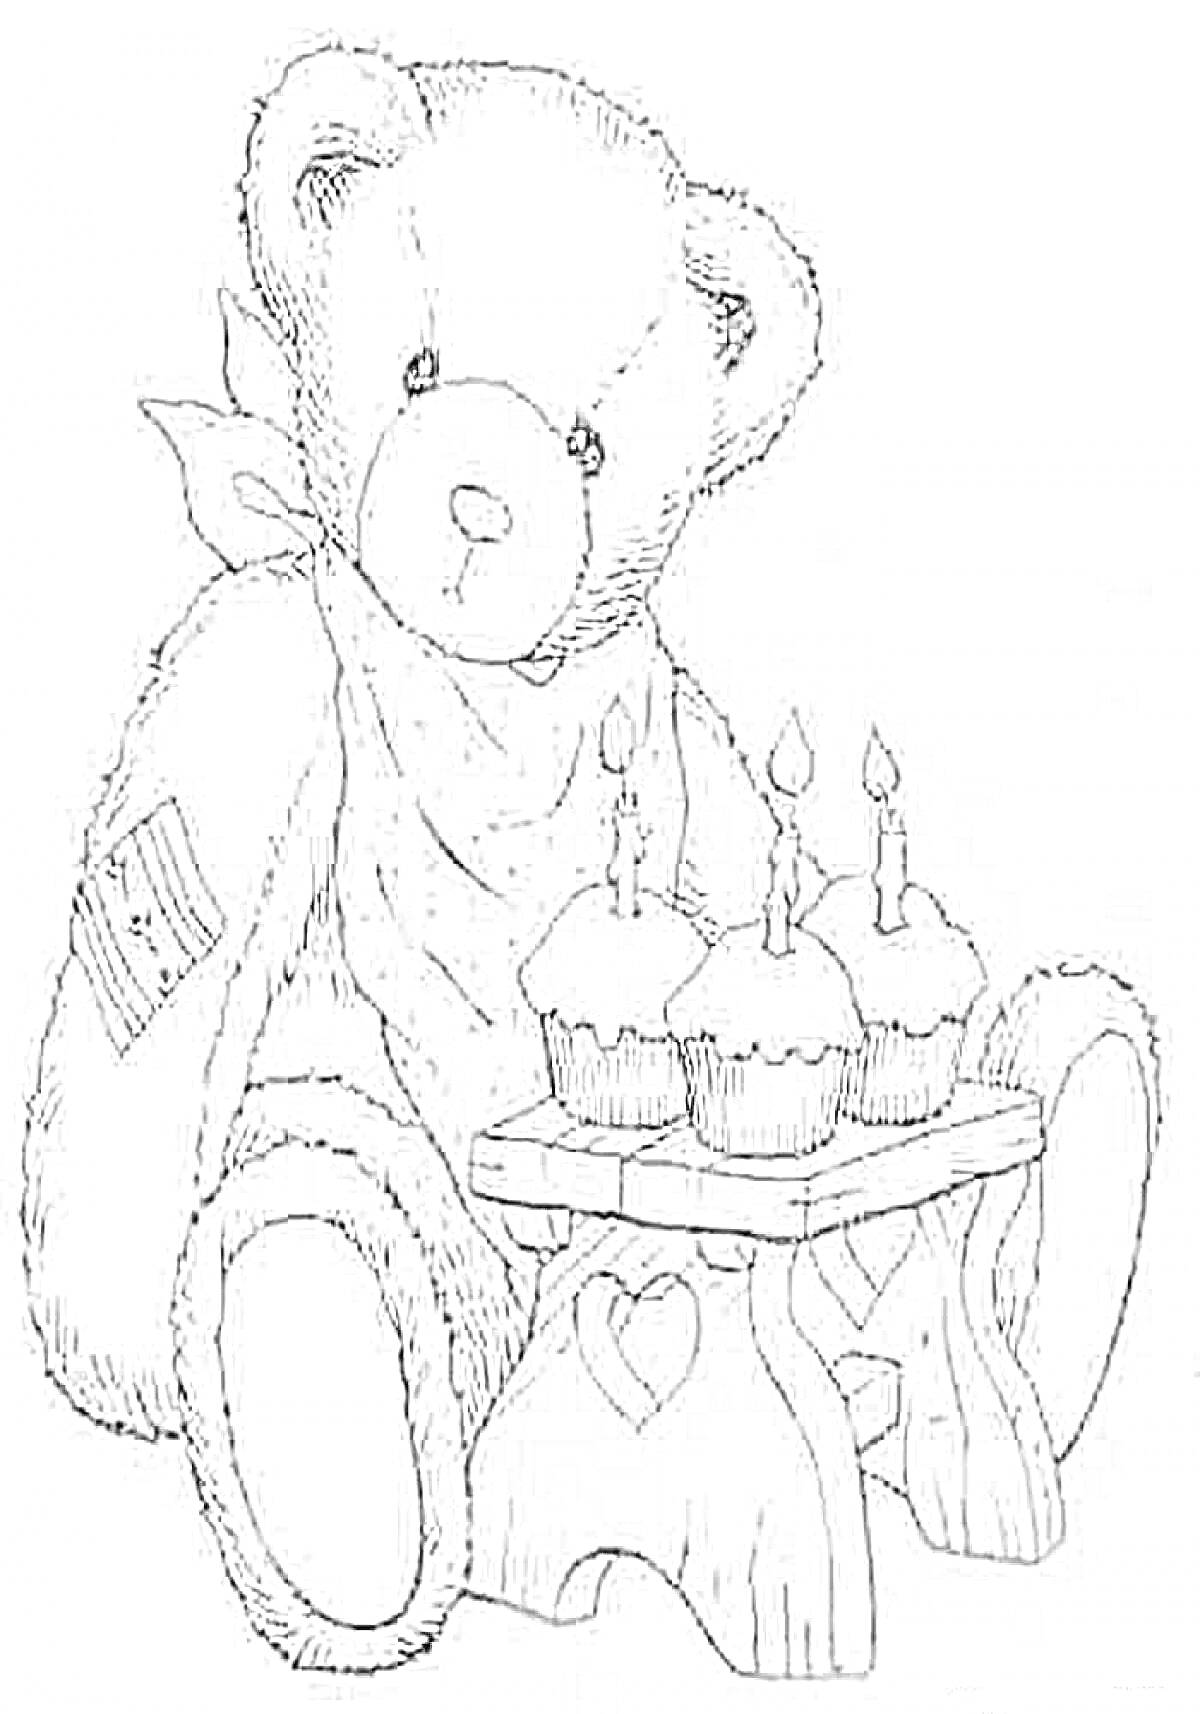 Мишка Тедди с повязкой на шее и заплаткой на плече, сидит с праздничным столом на котором три свечи вставлены в кексы